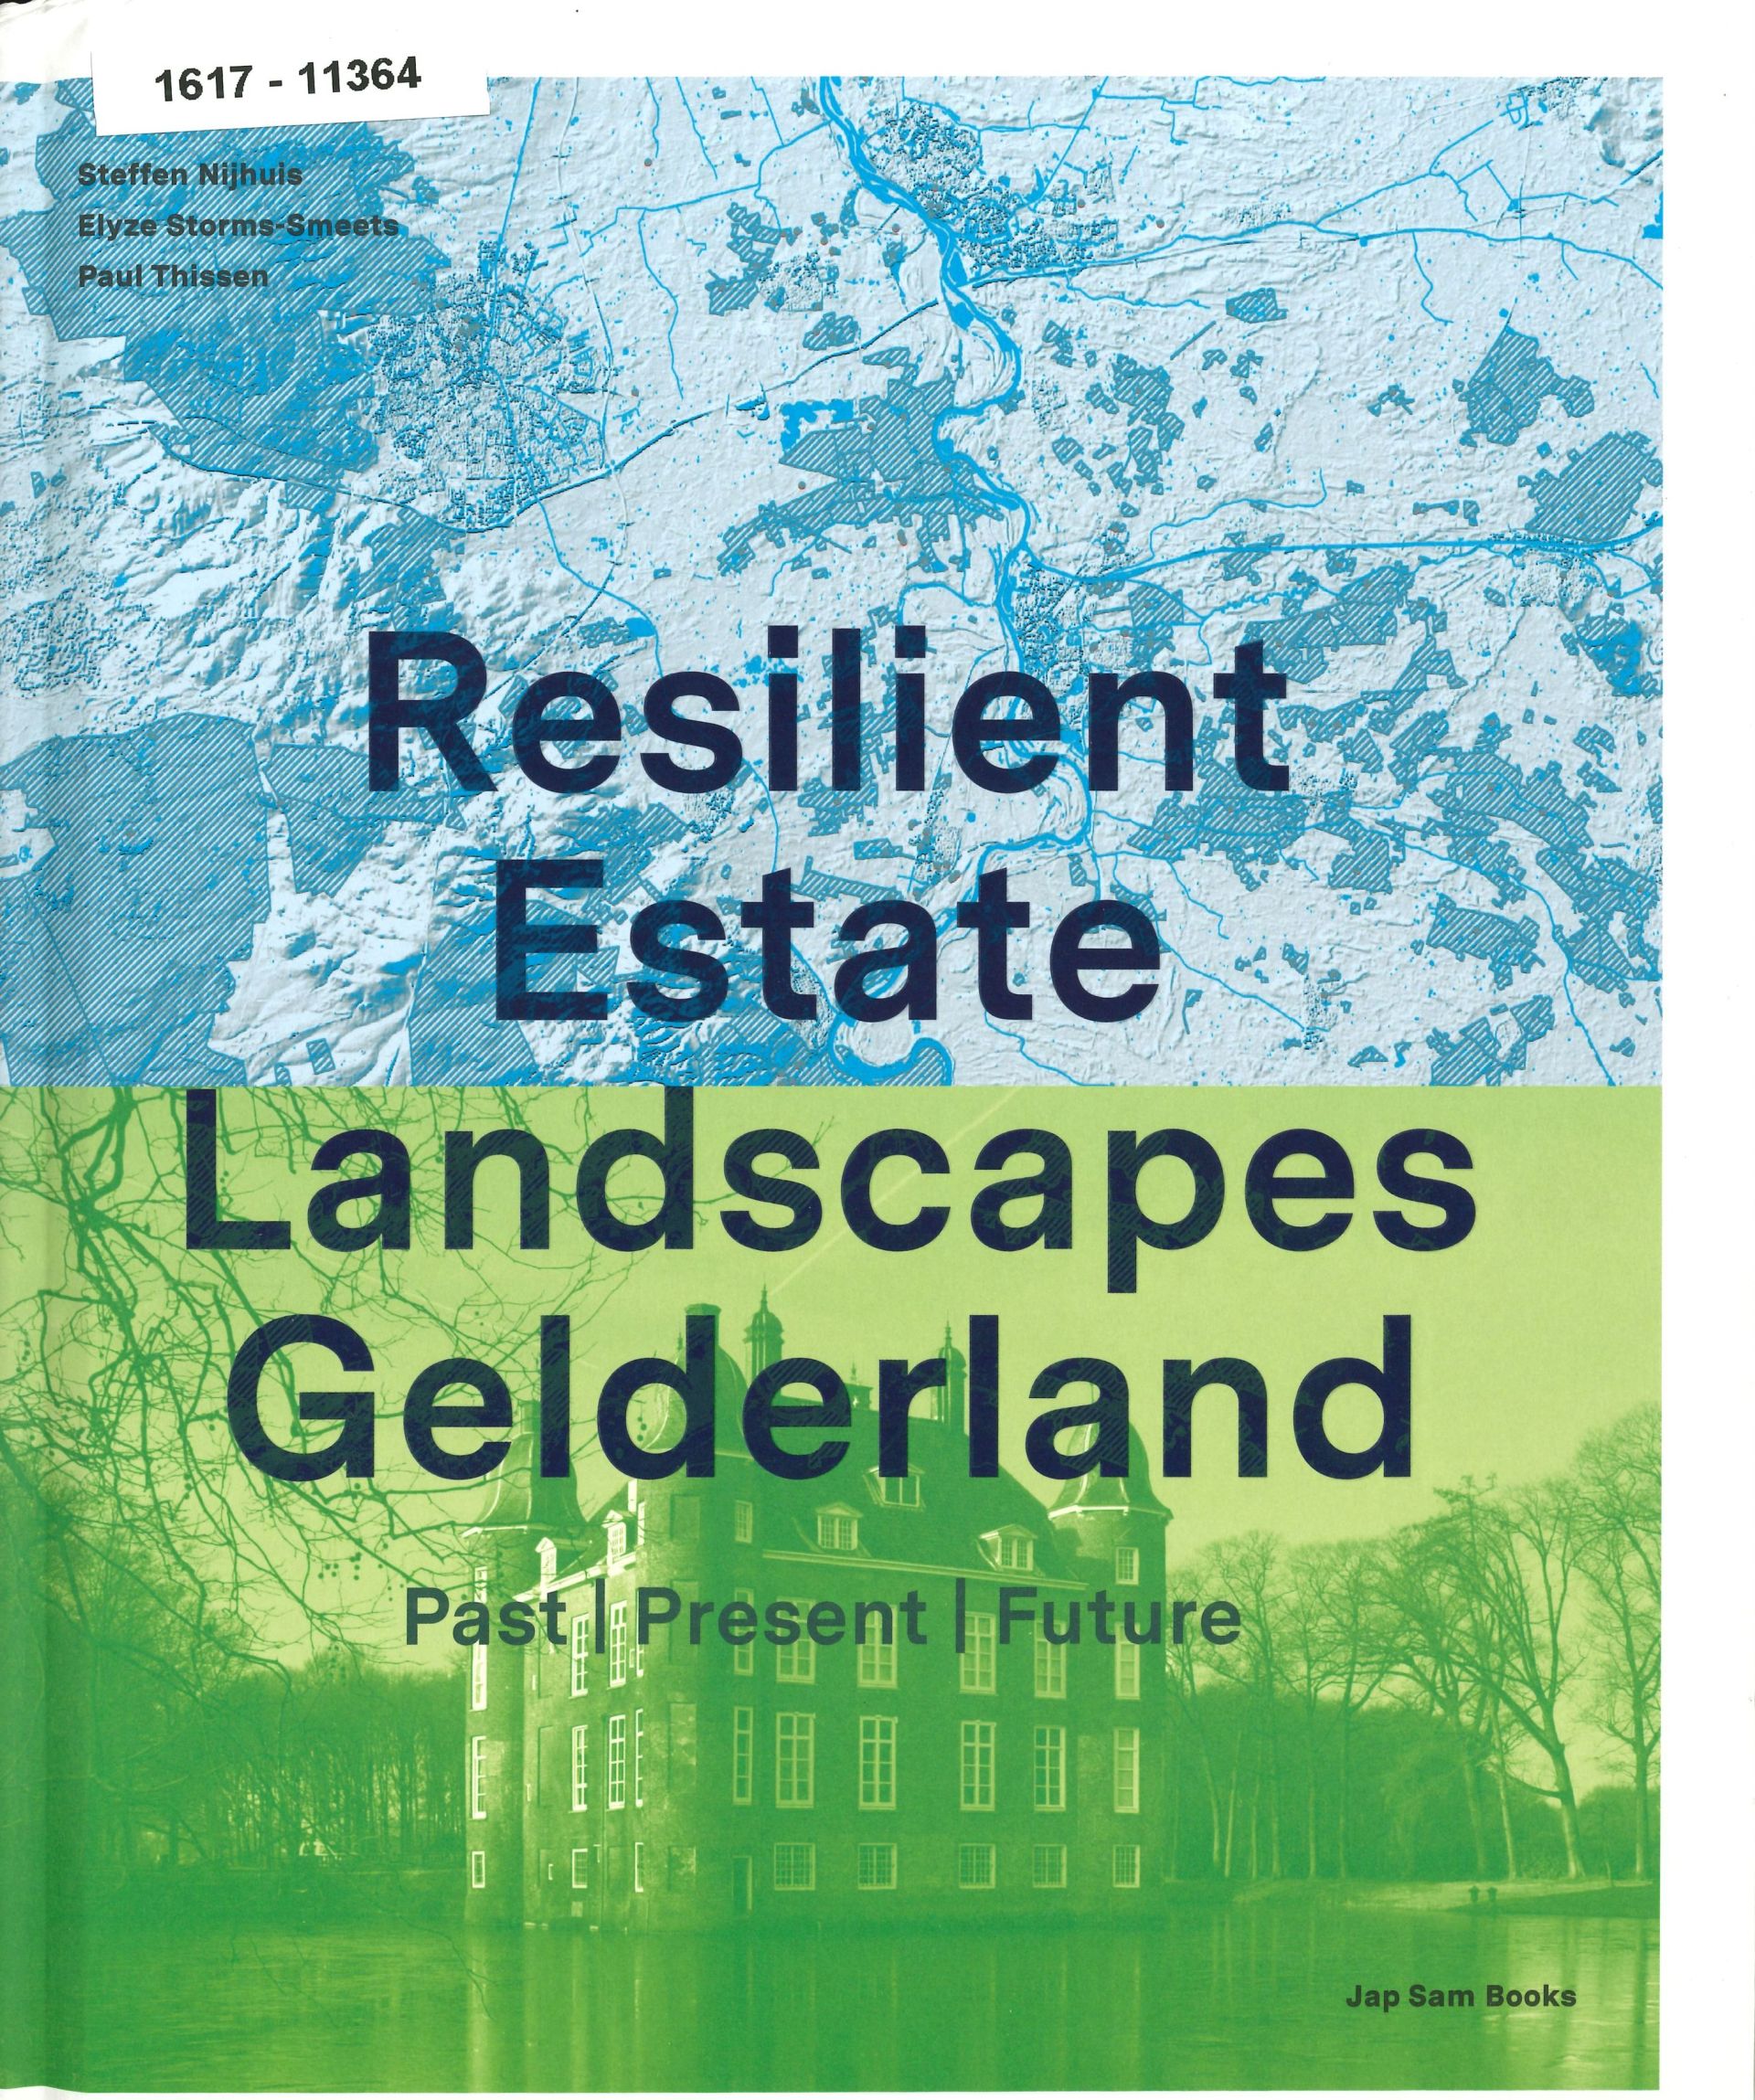 Omslag boek Landscapes Gelderland